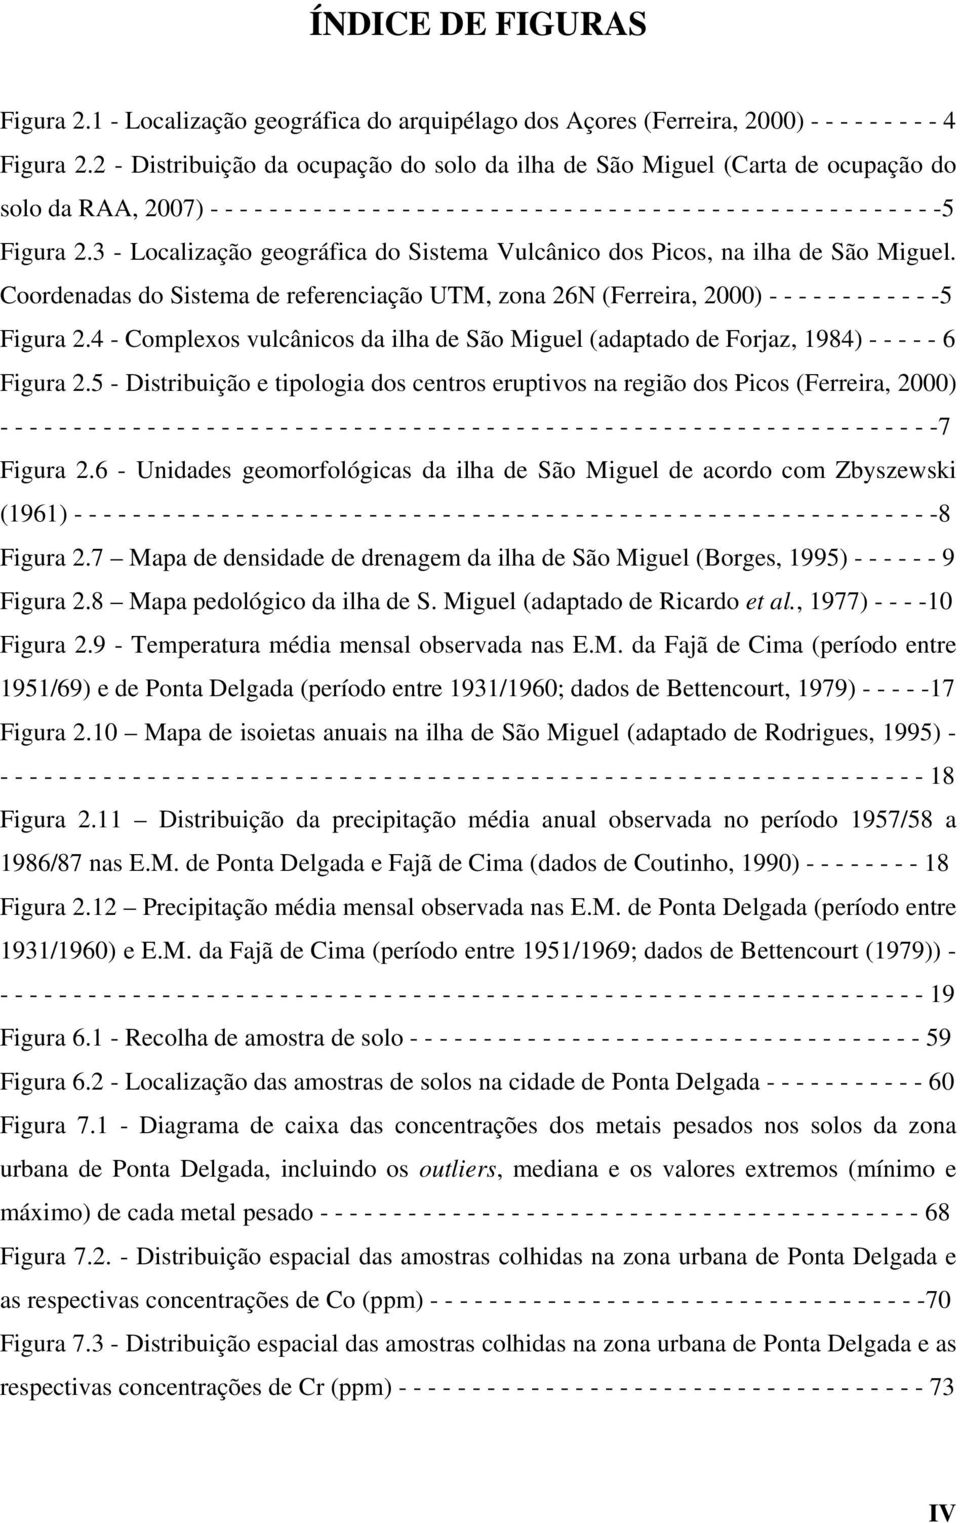 -5 Figura 2.3 - Localização geográfica do Sistema Vulcânico dos Picos, na ilha de São Miguel. Coordenadas do Sistema de referenciação UTM, zona 26N (Ferreira, 2000) - - - - - - - - - - - -5 Figura 2.